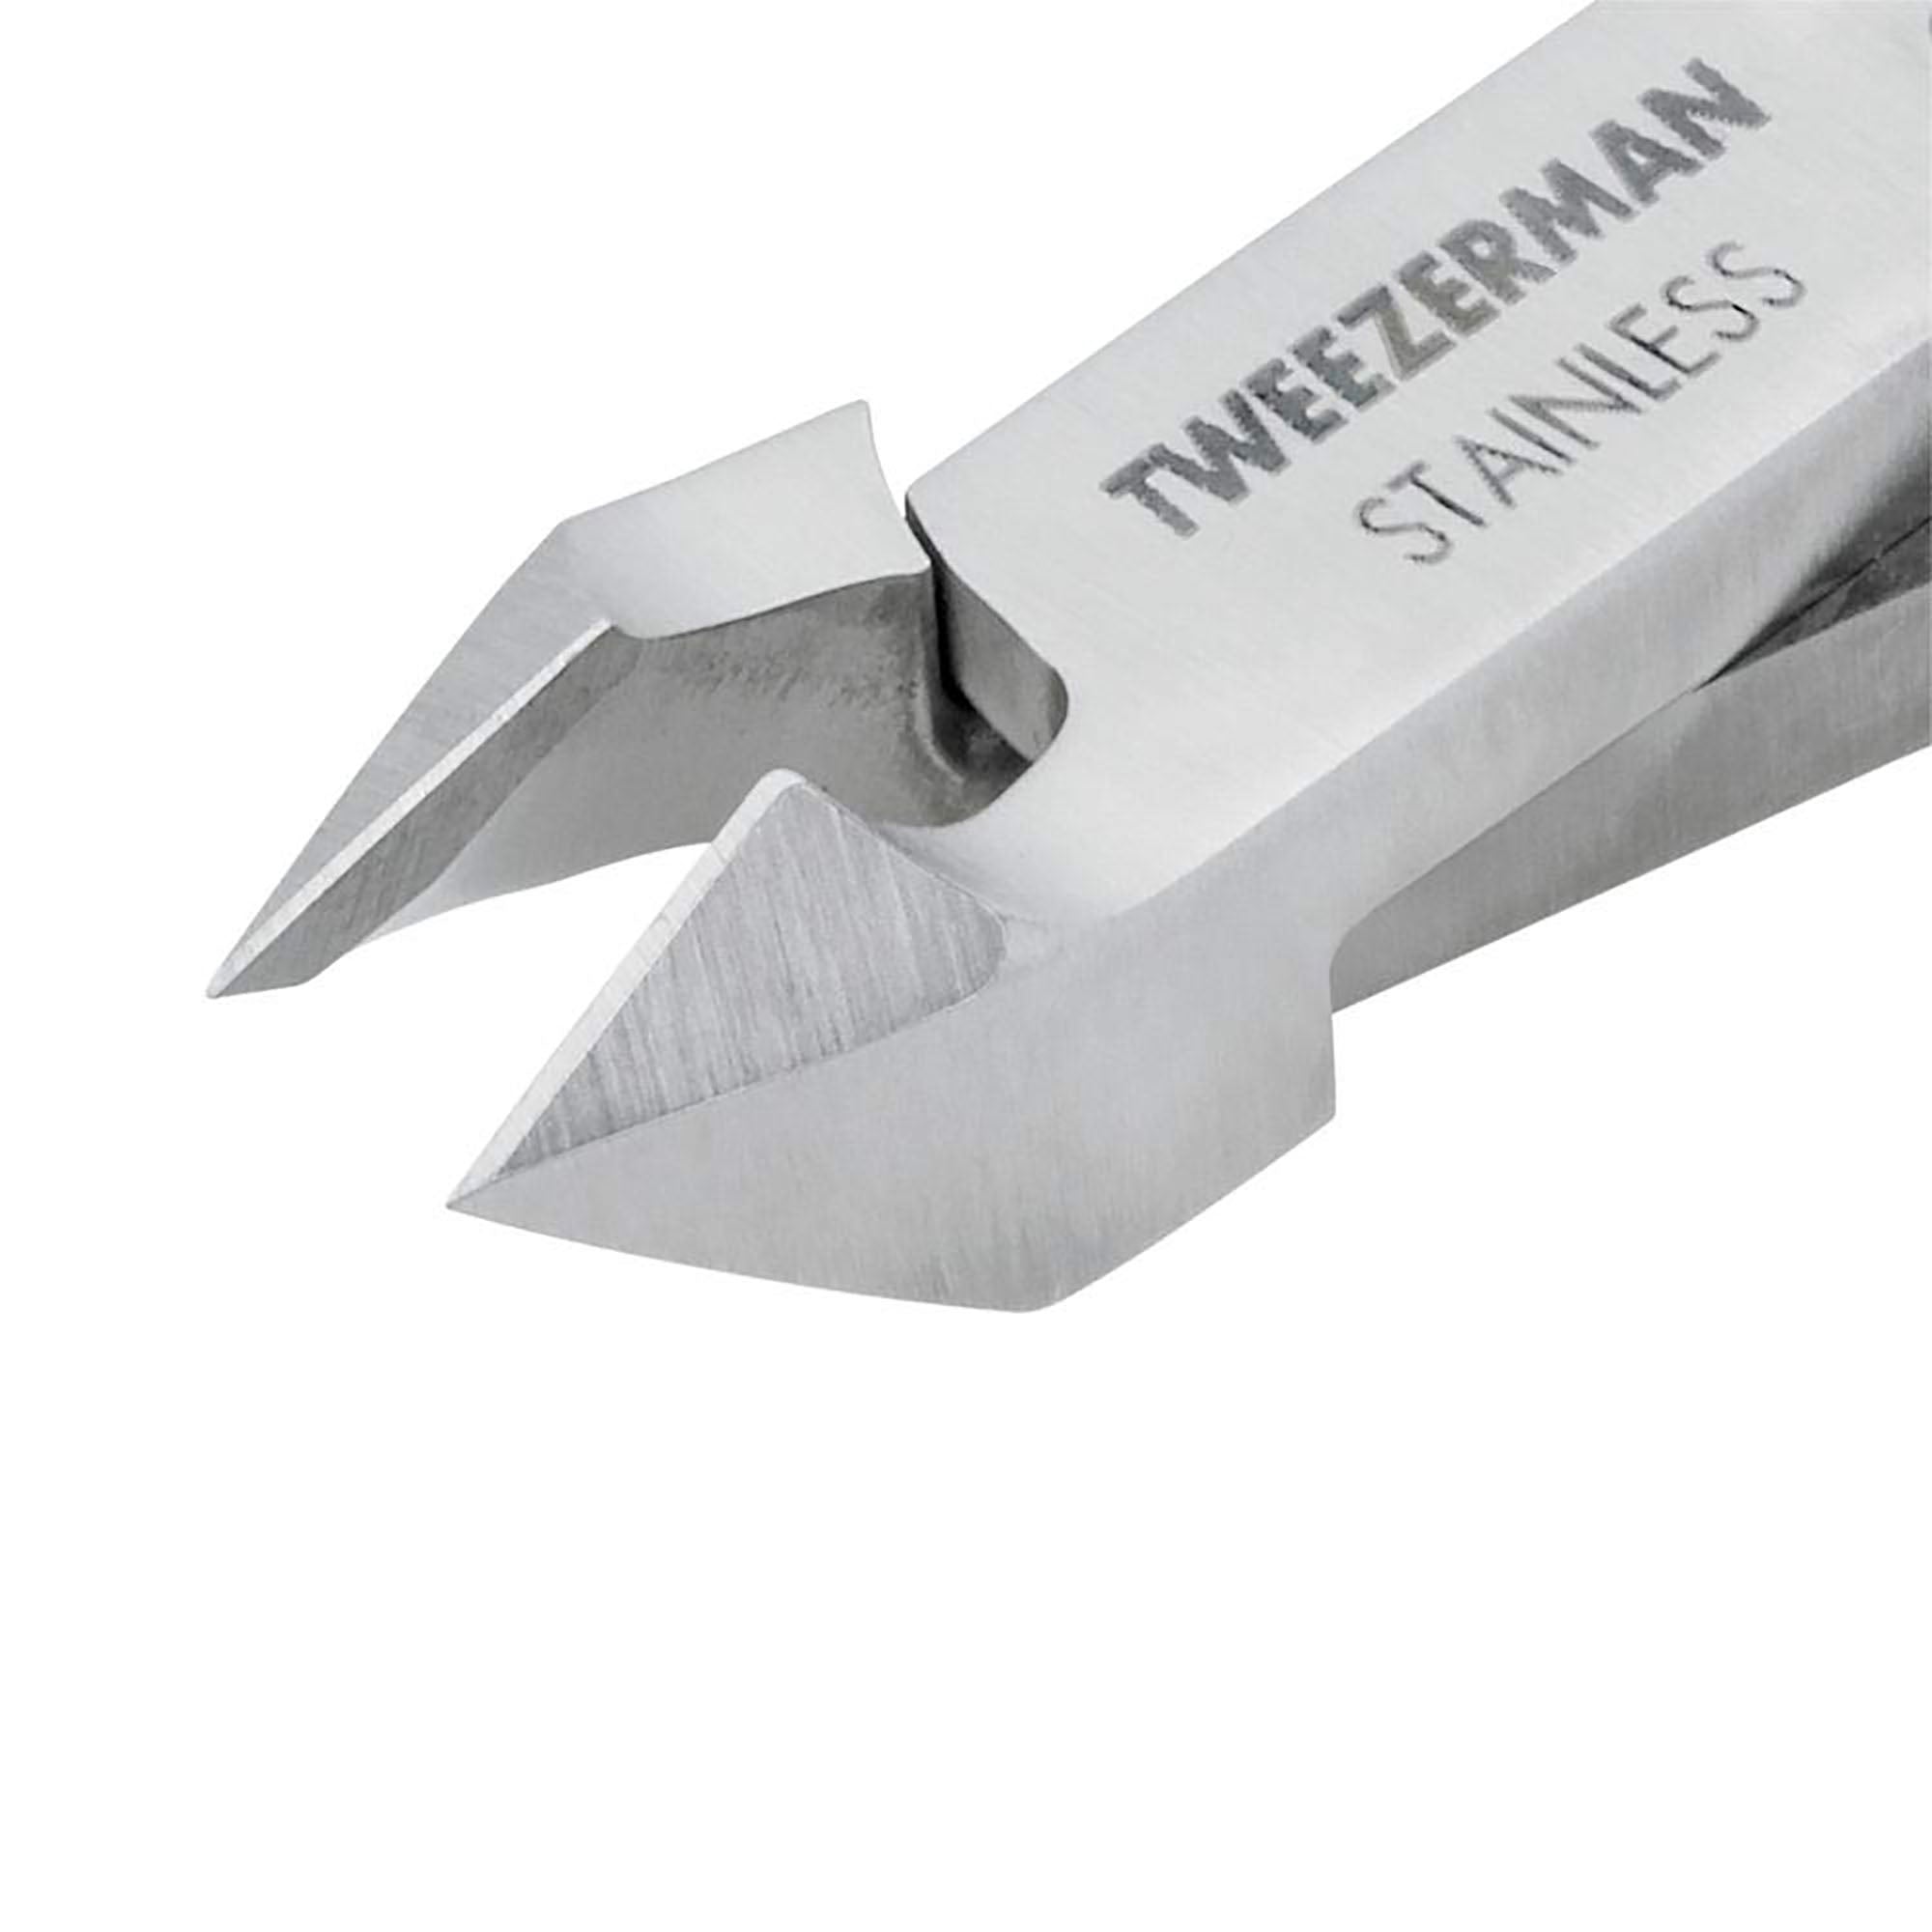 Tweezerman Stainless Steel Cuticle Nipper #3196-R